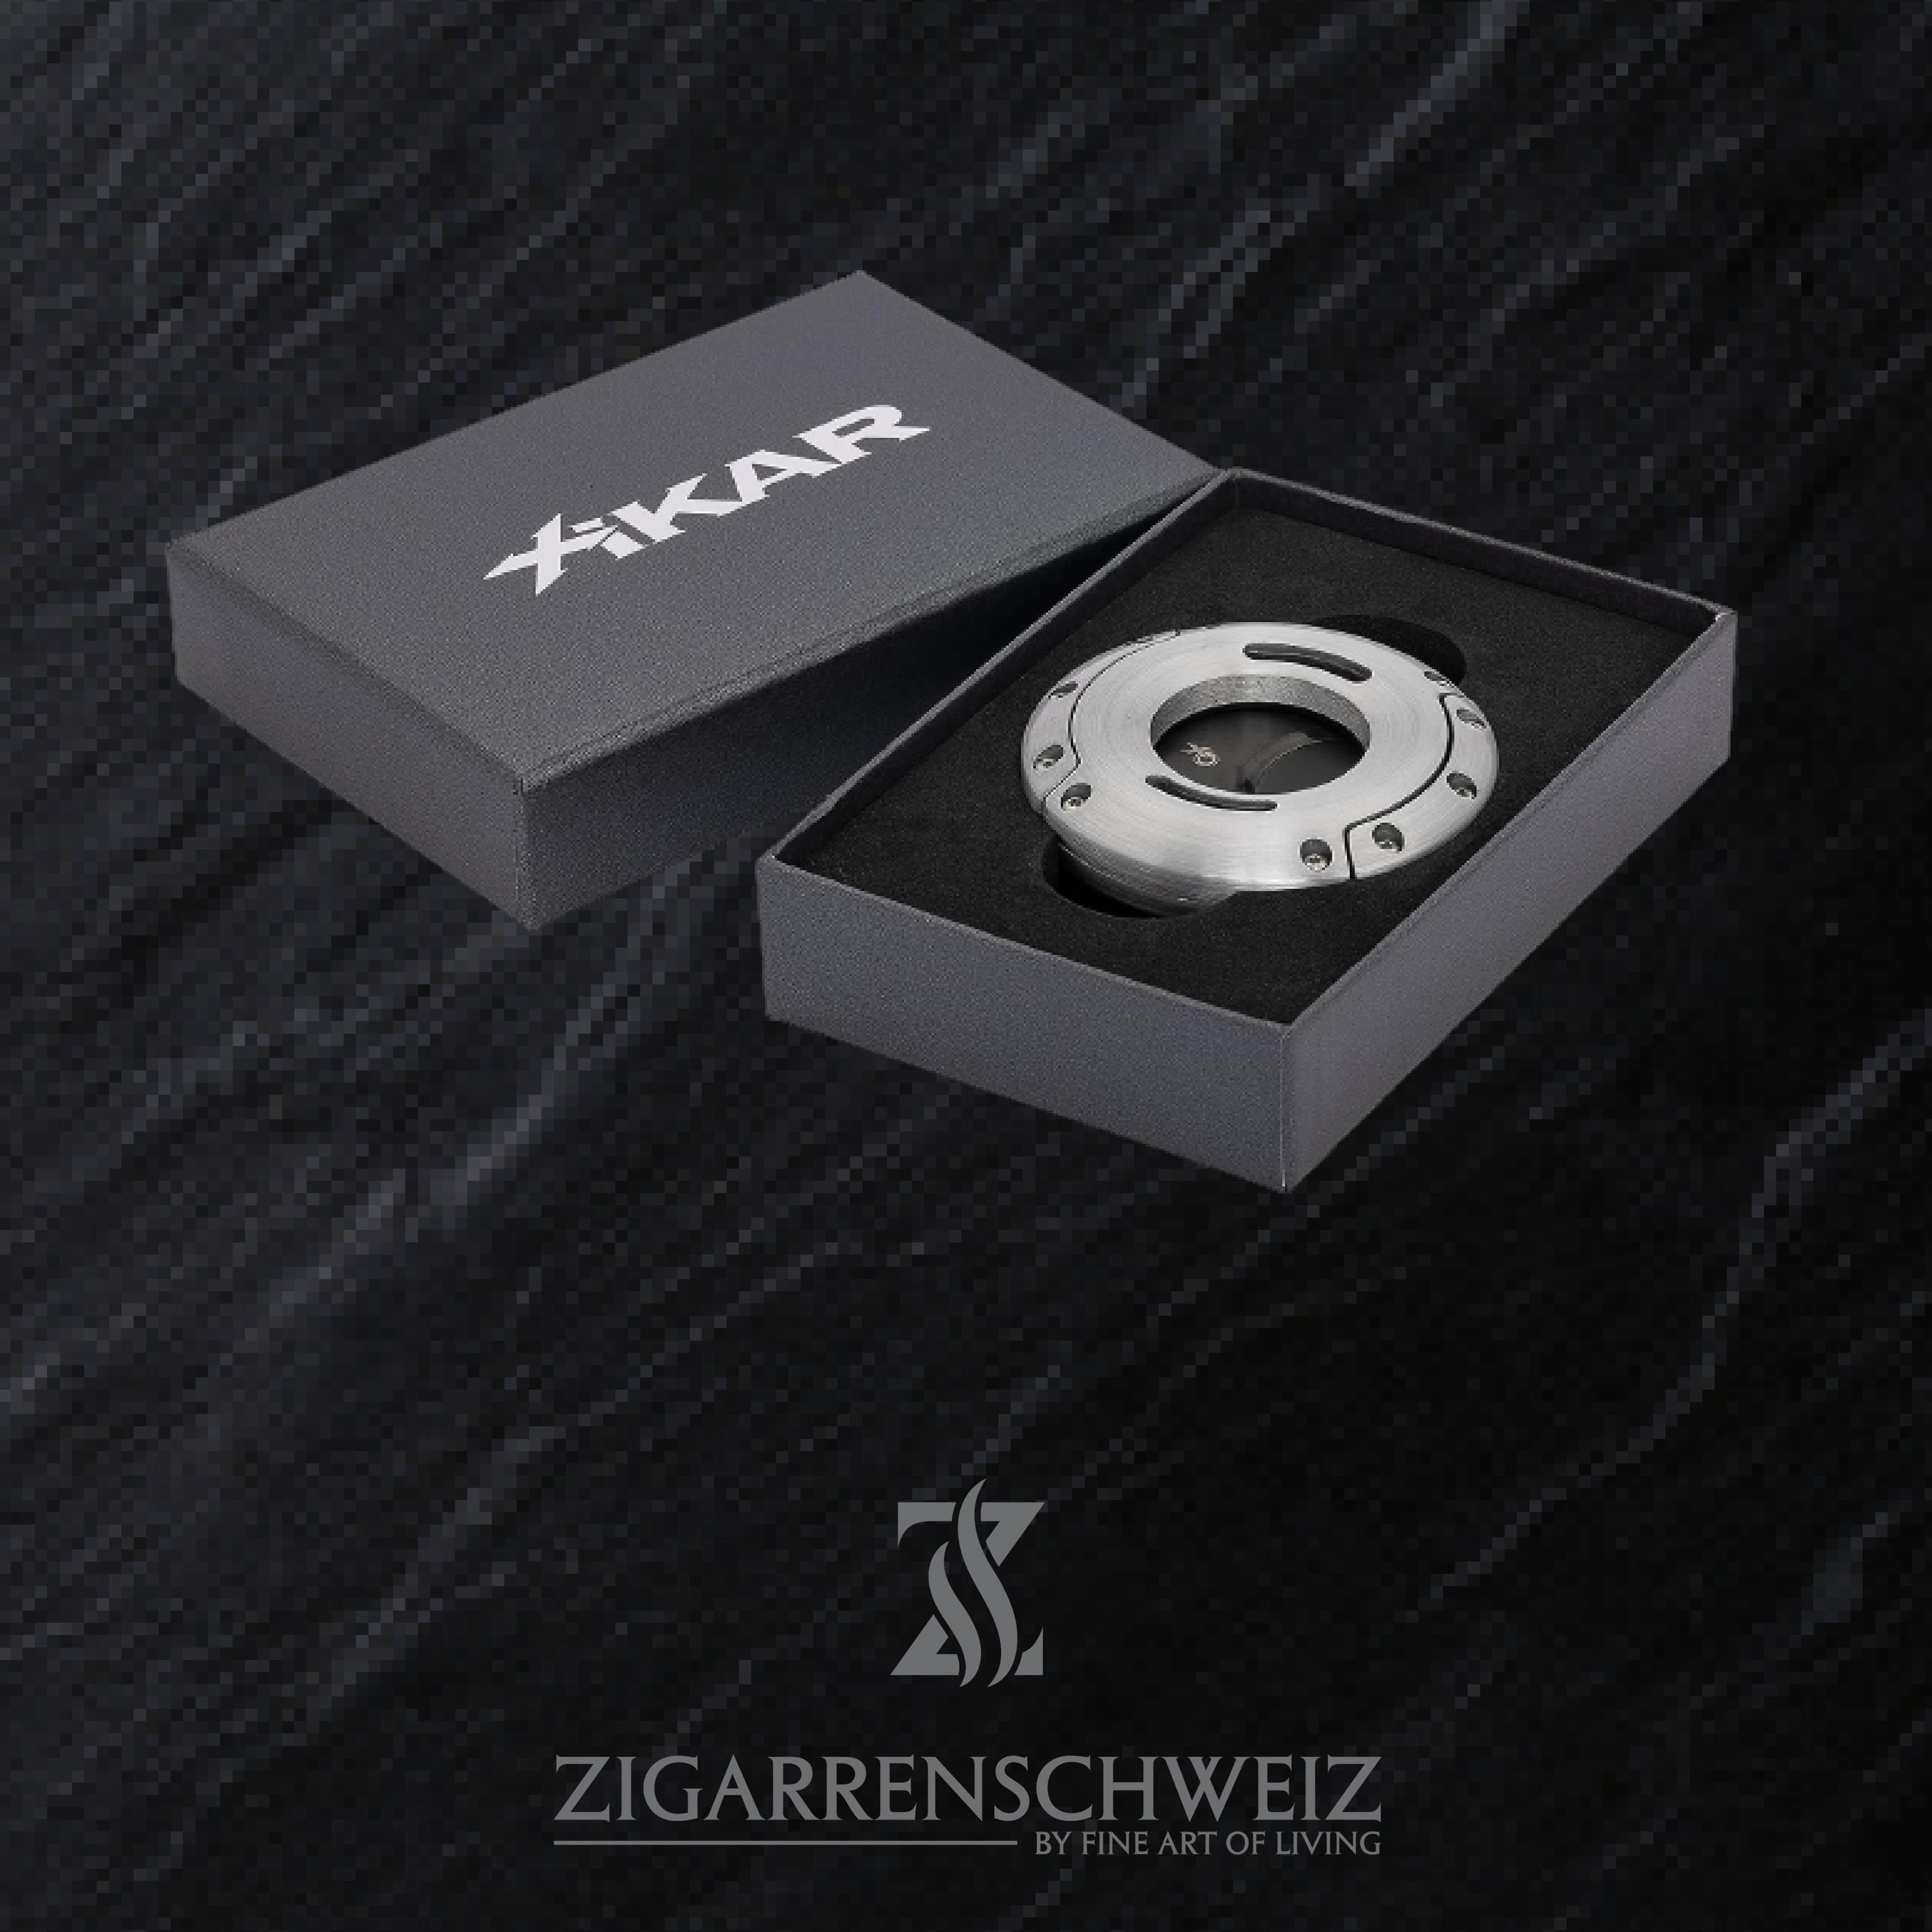 Xikar XO Zigarren Cutter, Farbe Gehäuse: Silber gebürstet, Farbe Klingen: Schwarz, in der Verpackung